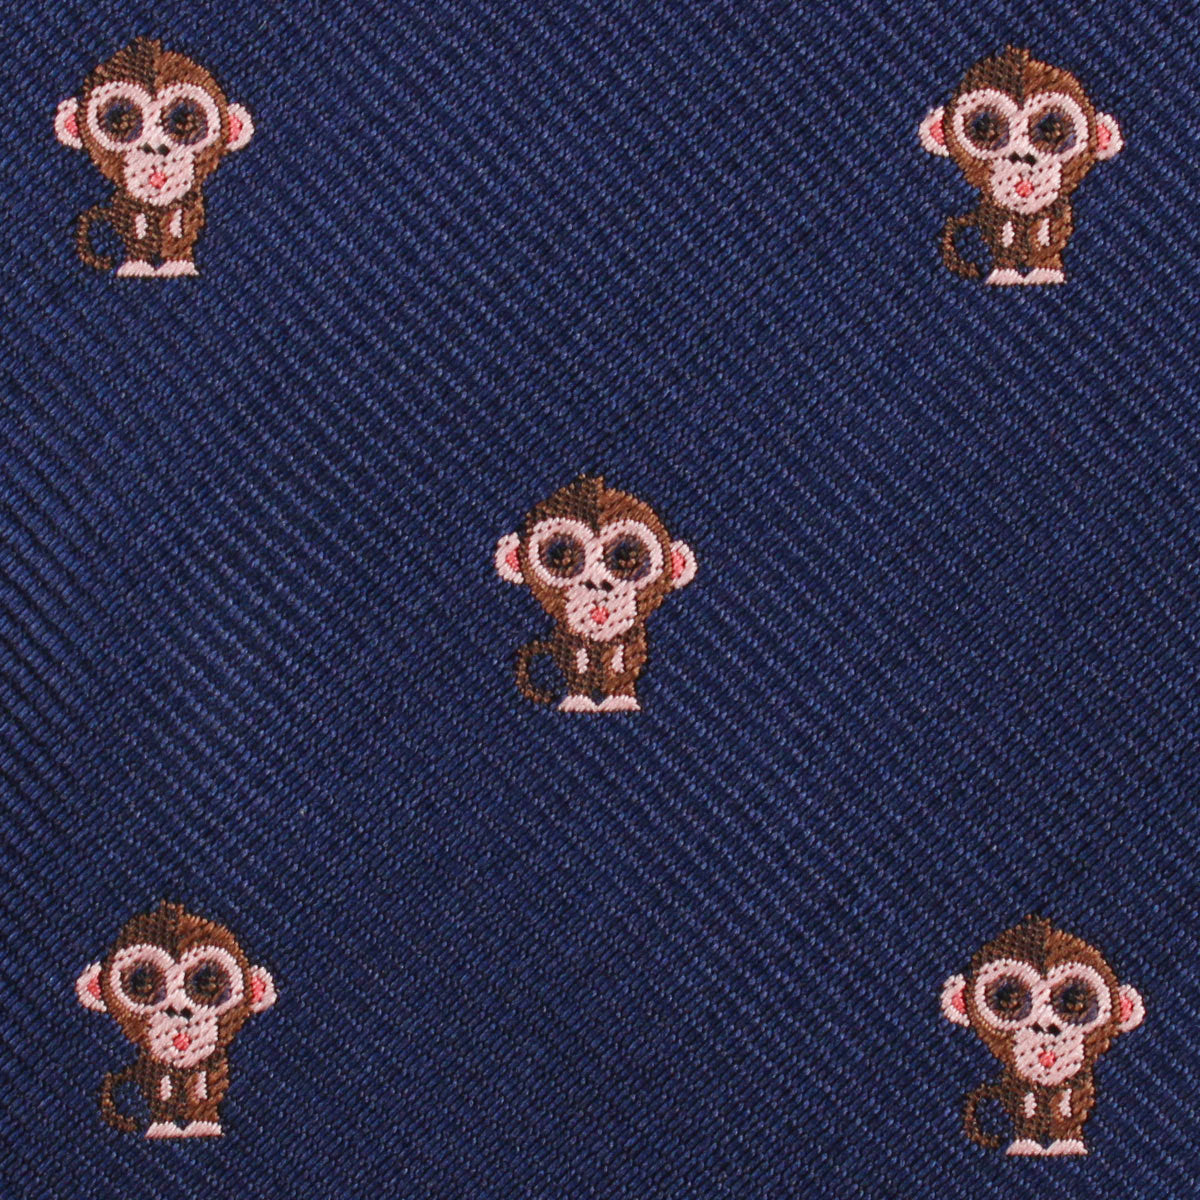 Monkey Fabric Kids Diamond Bow Tie